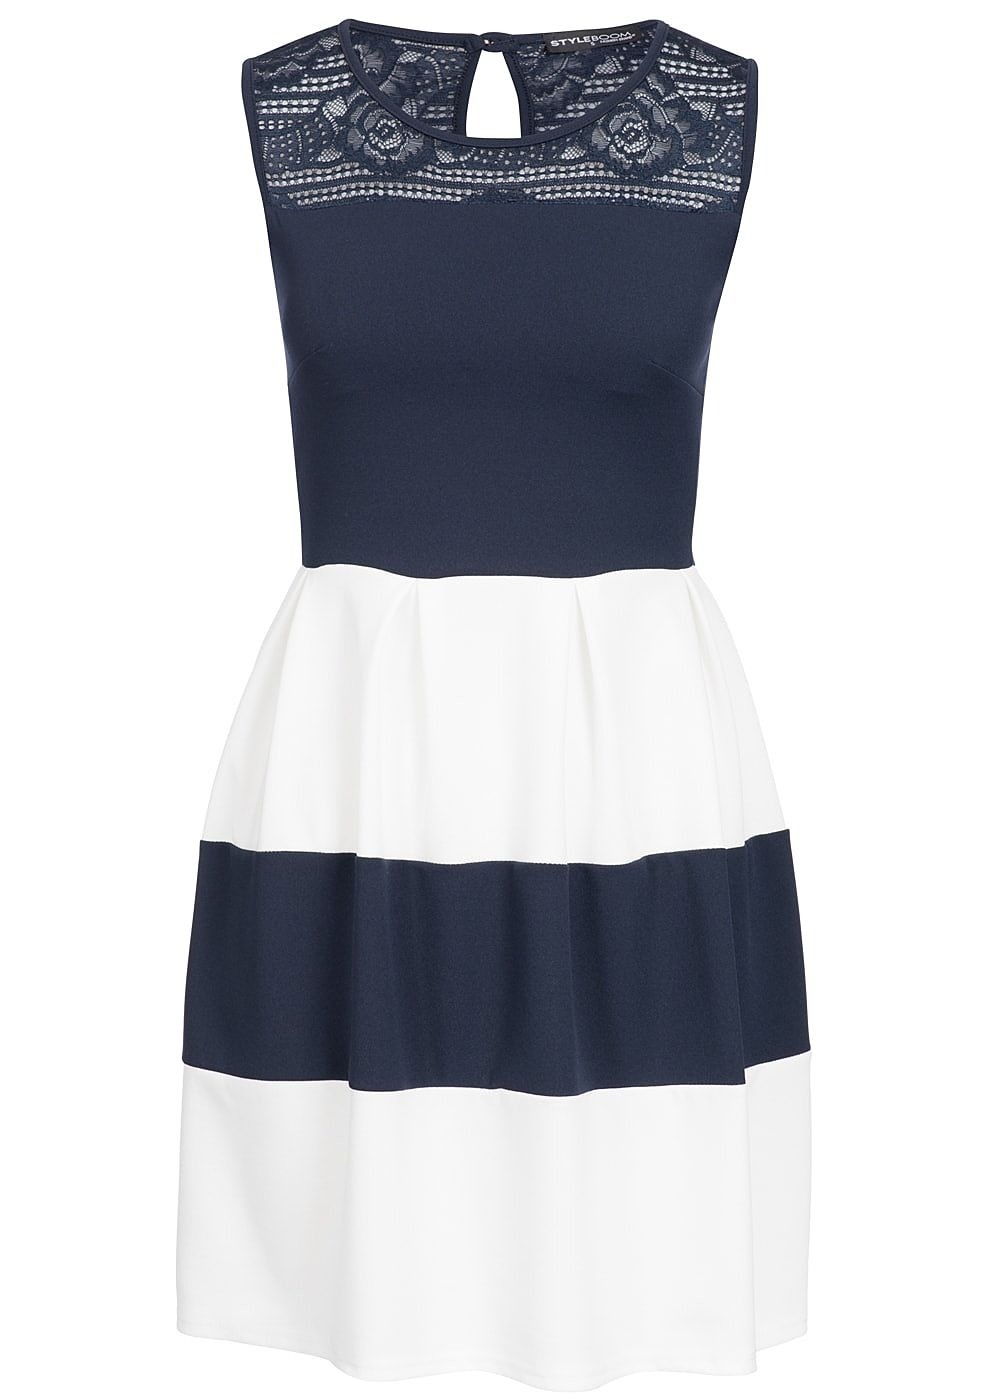 Formal Coolste Kleid Blau Weiß Vertrieb Genial Kleid Blau Weiß Ärmel